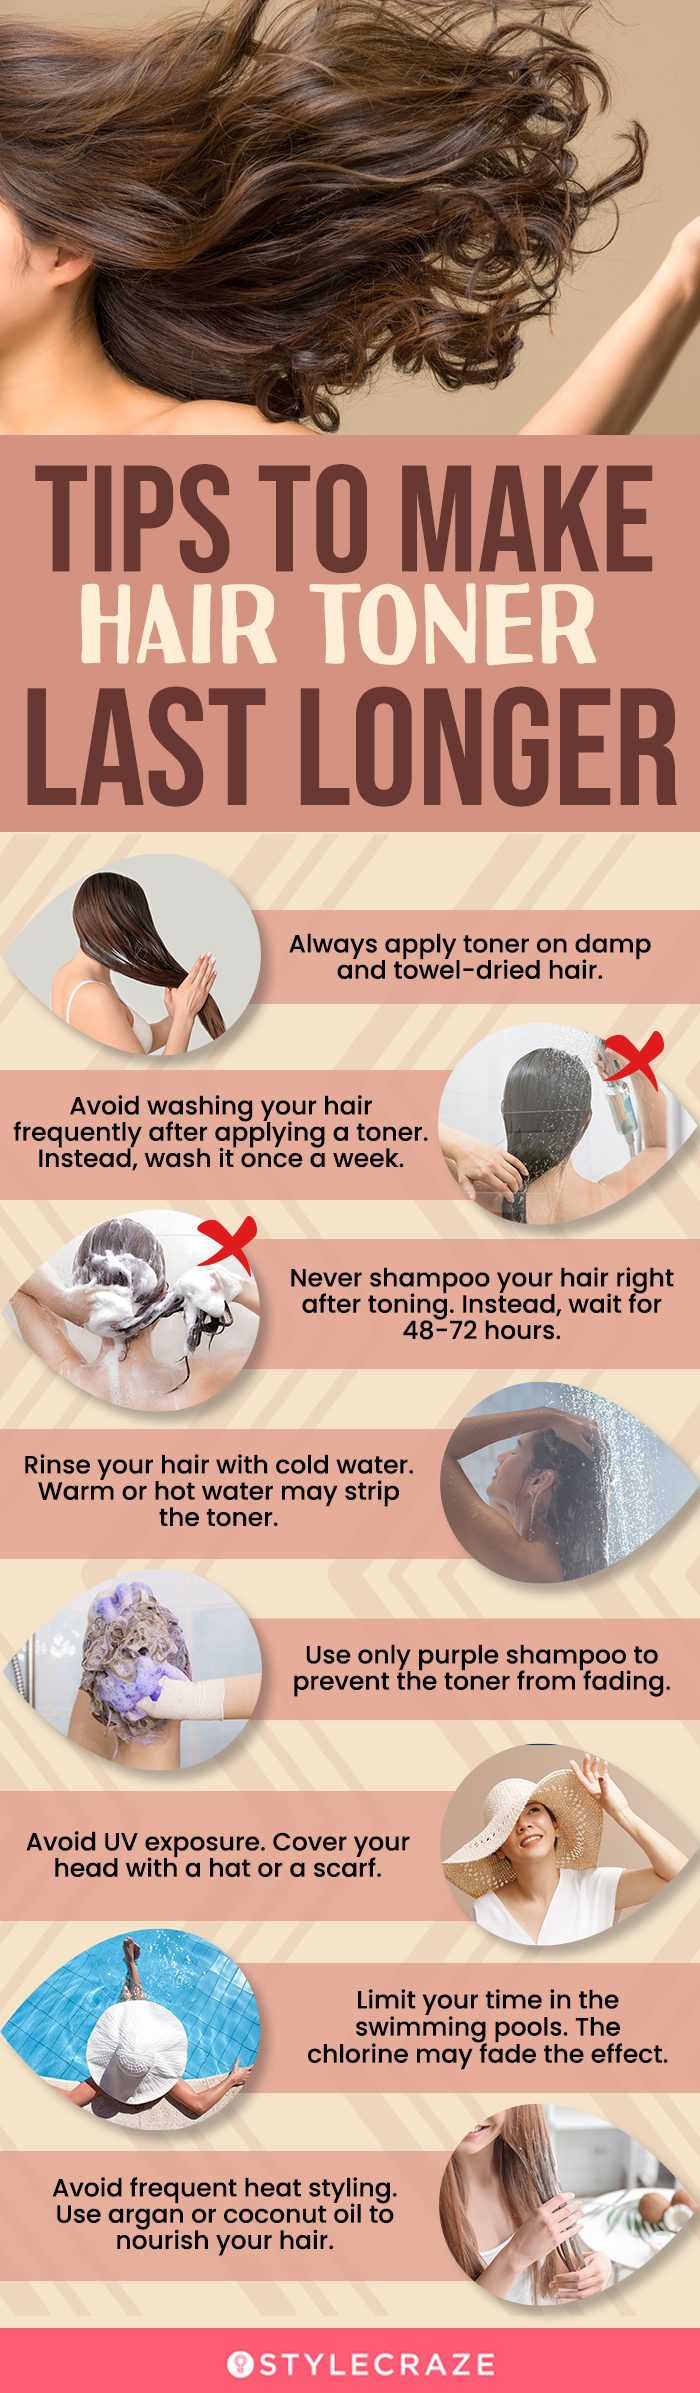 tips to make hair toner last longer [infographic]